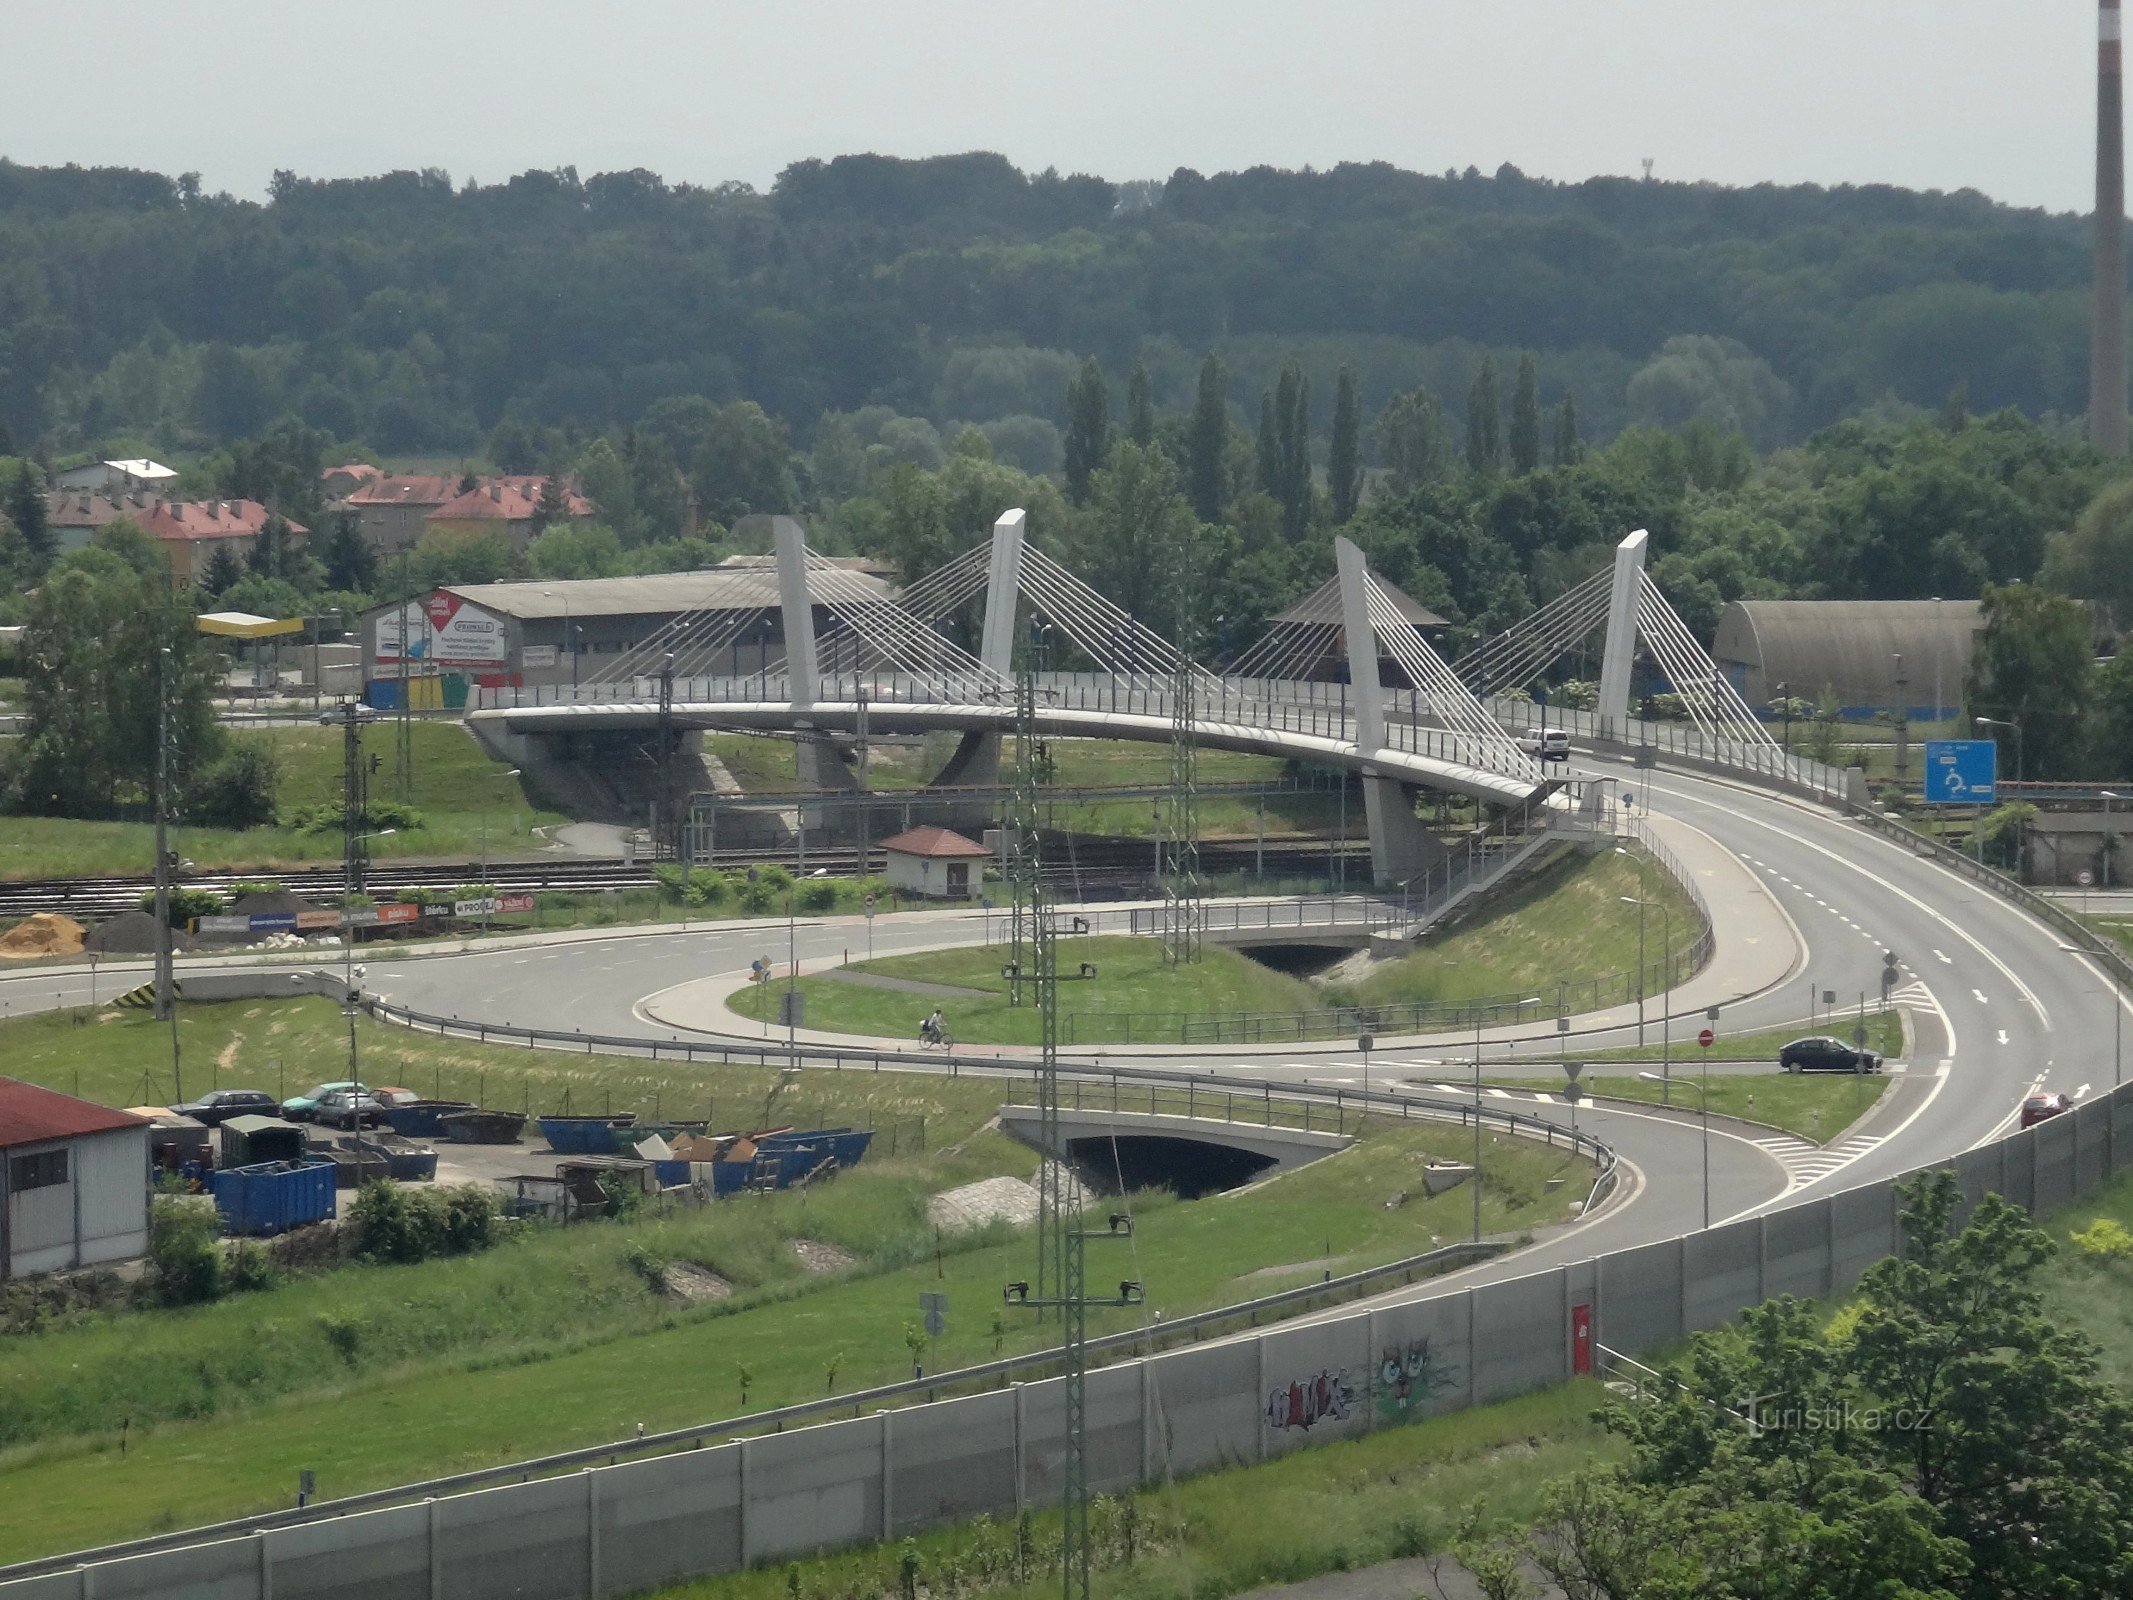 Vista de Bohumín desde la torre del puente sobre la vía férrea que une Nový Bohumín y Bohumín-Skřečoň